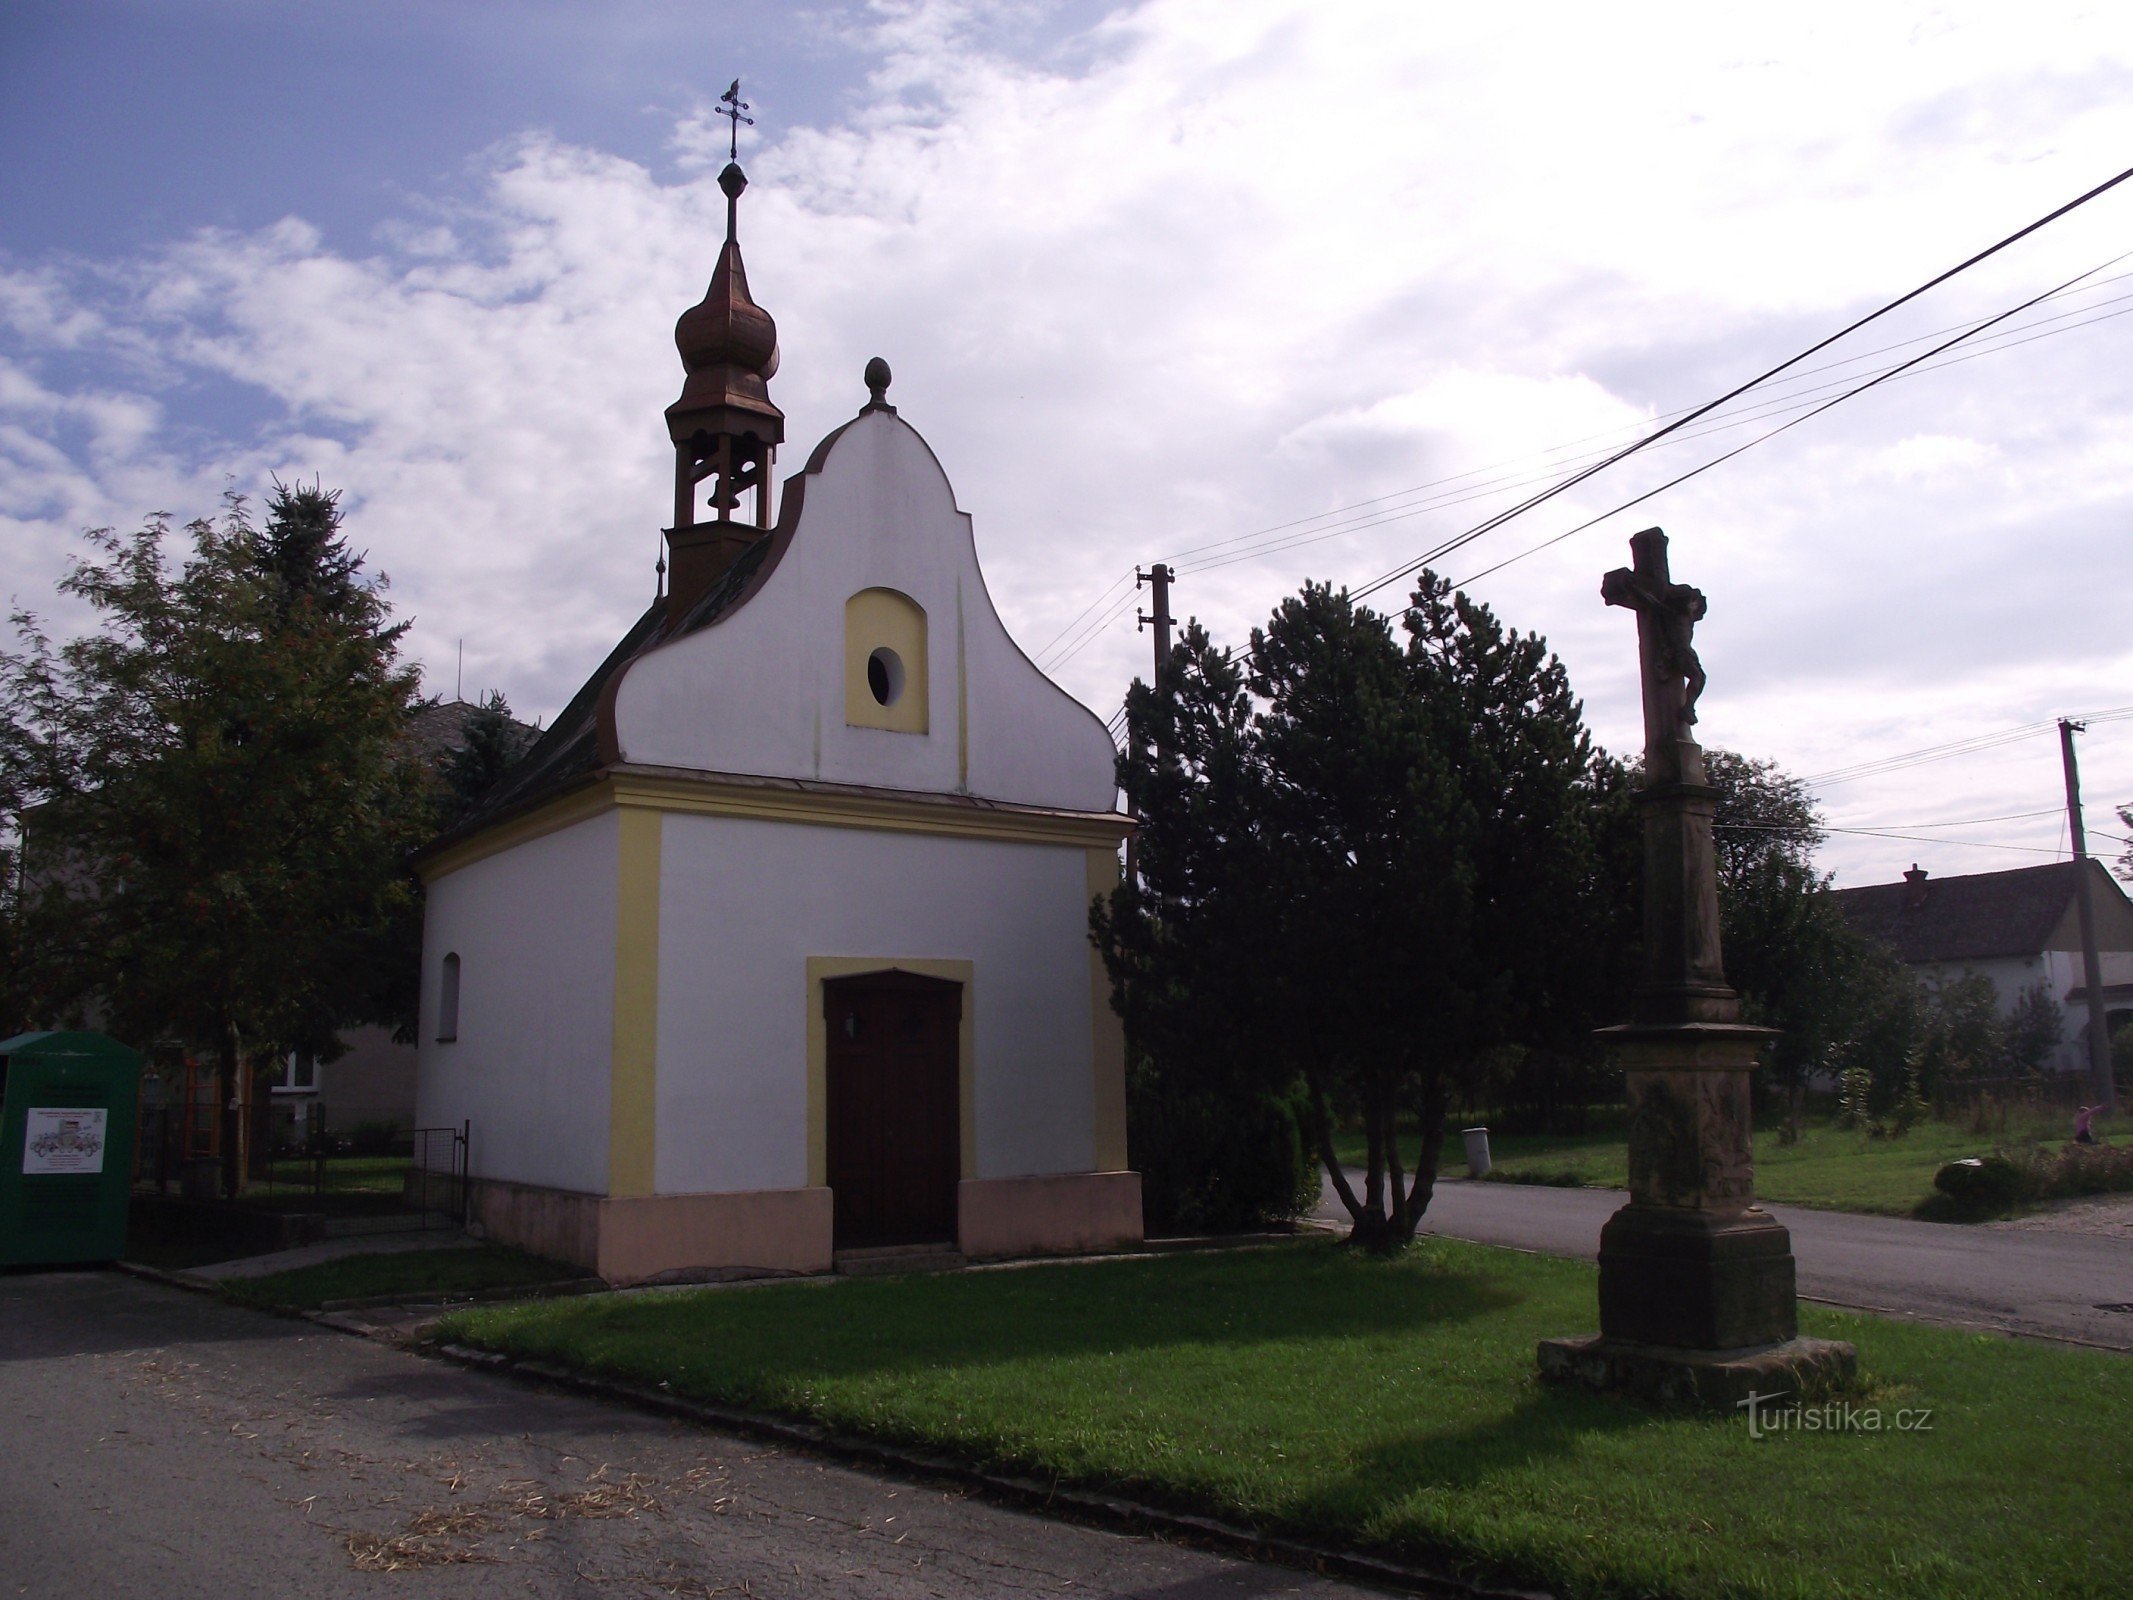 Doubravice (Moravičany) - nhà nguyện của Chúa Ba Ngôi